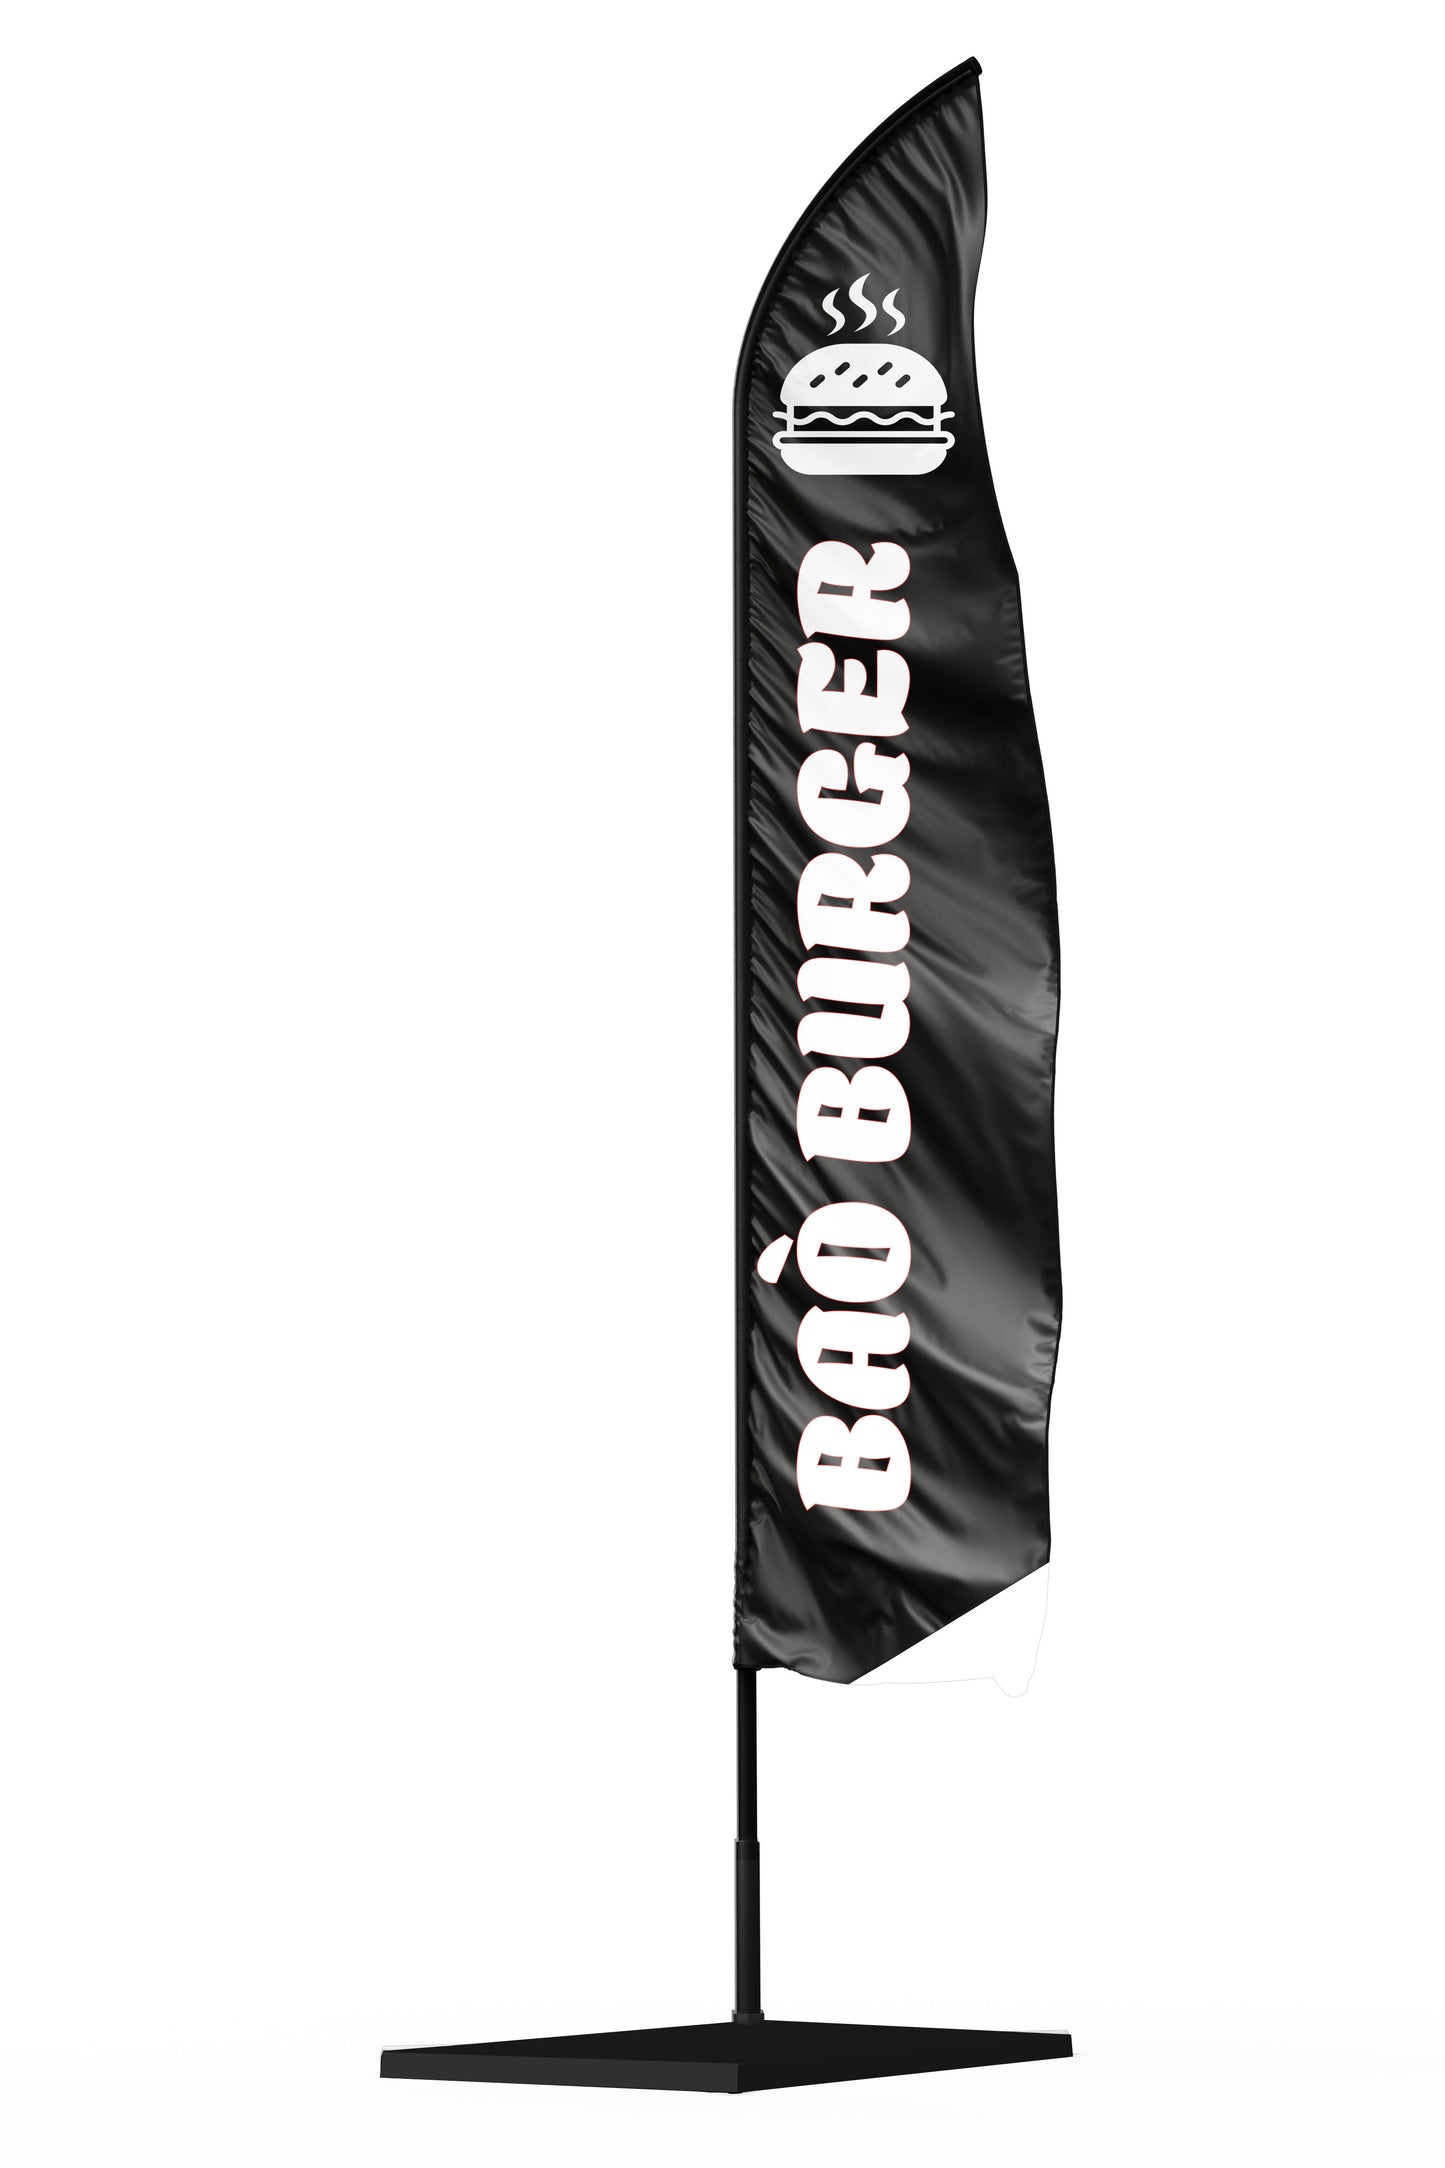 Drapeau noir avec une inscription blanche bao burger et un dessin de burger blanc en haut de la voile